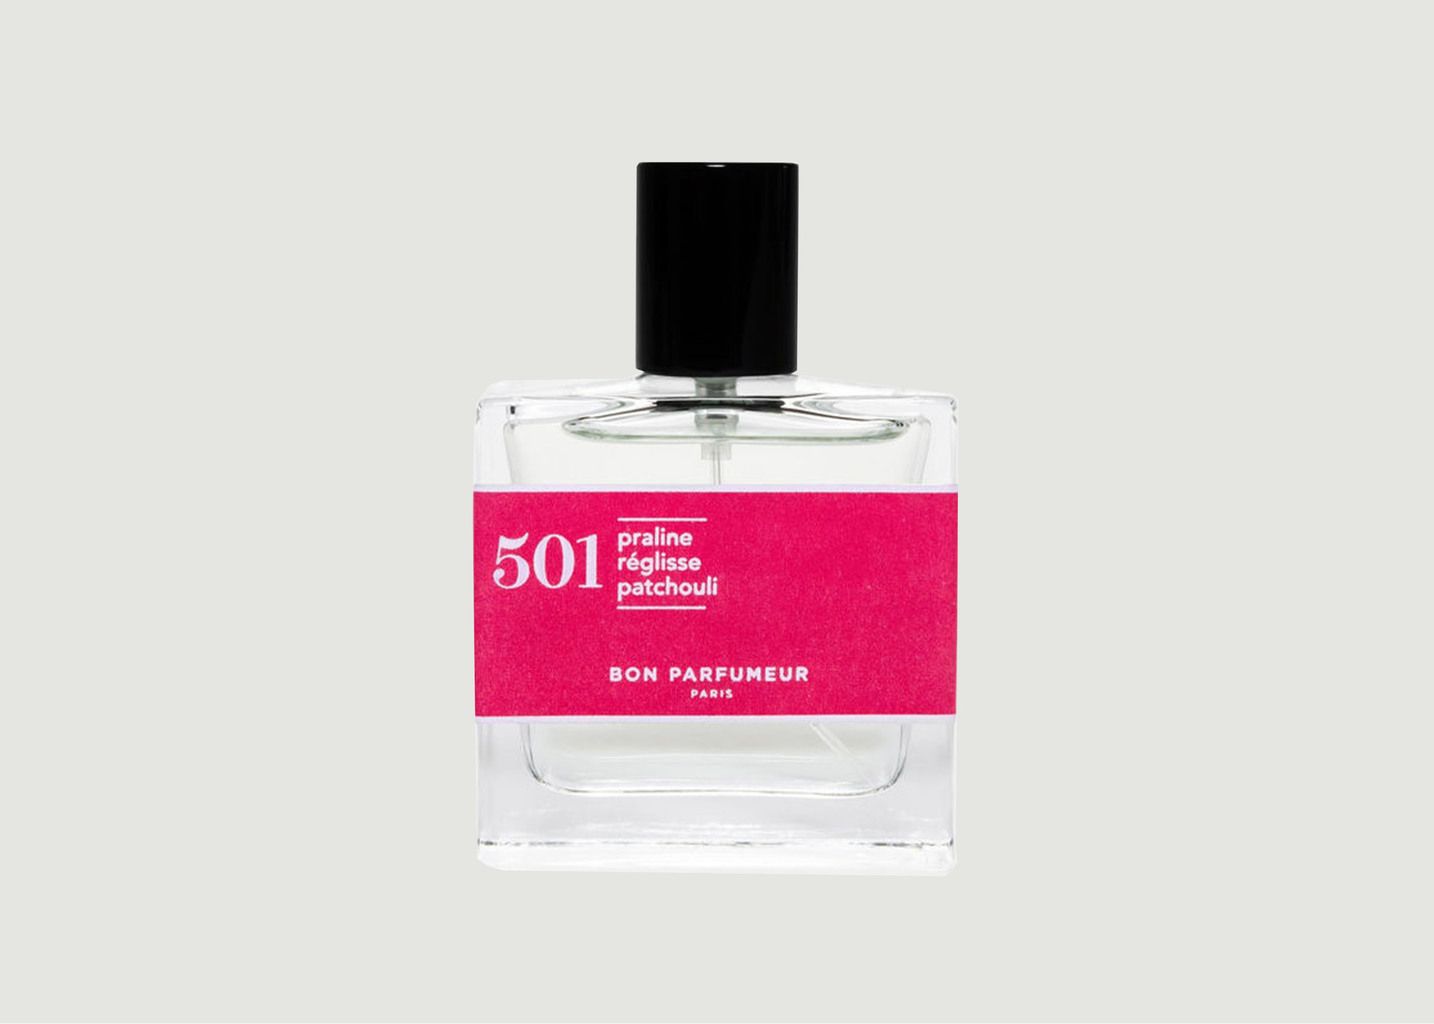 Eau de Parfum 501: Praline, Einhorn, Patchouli - Bon Parfumeur